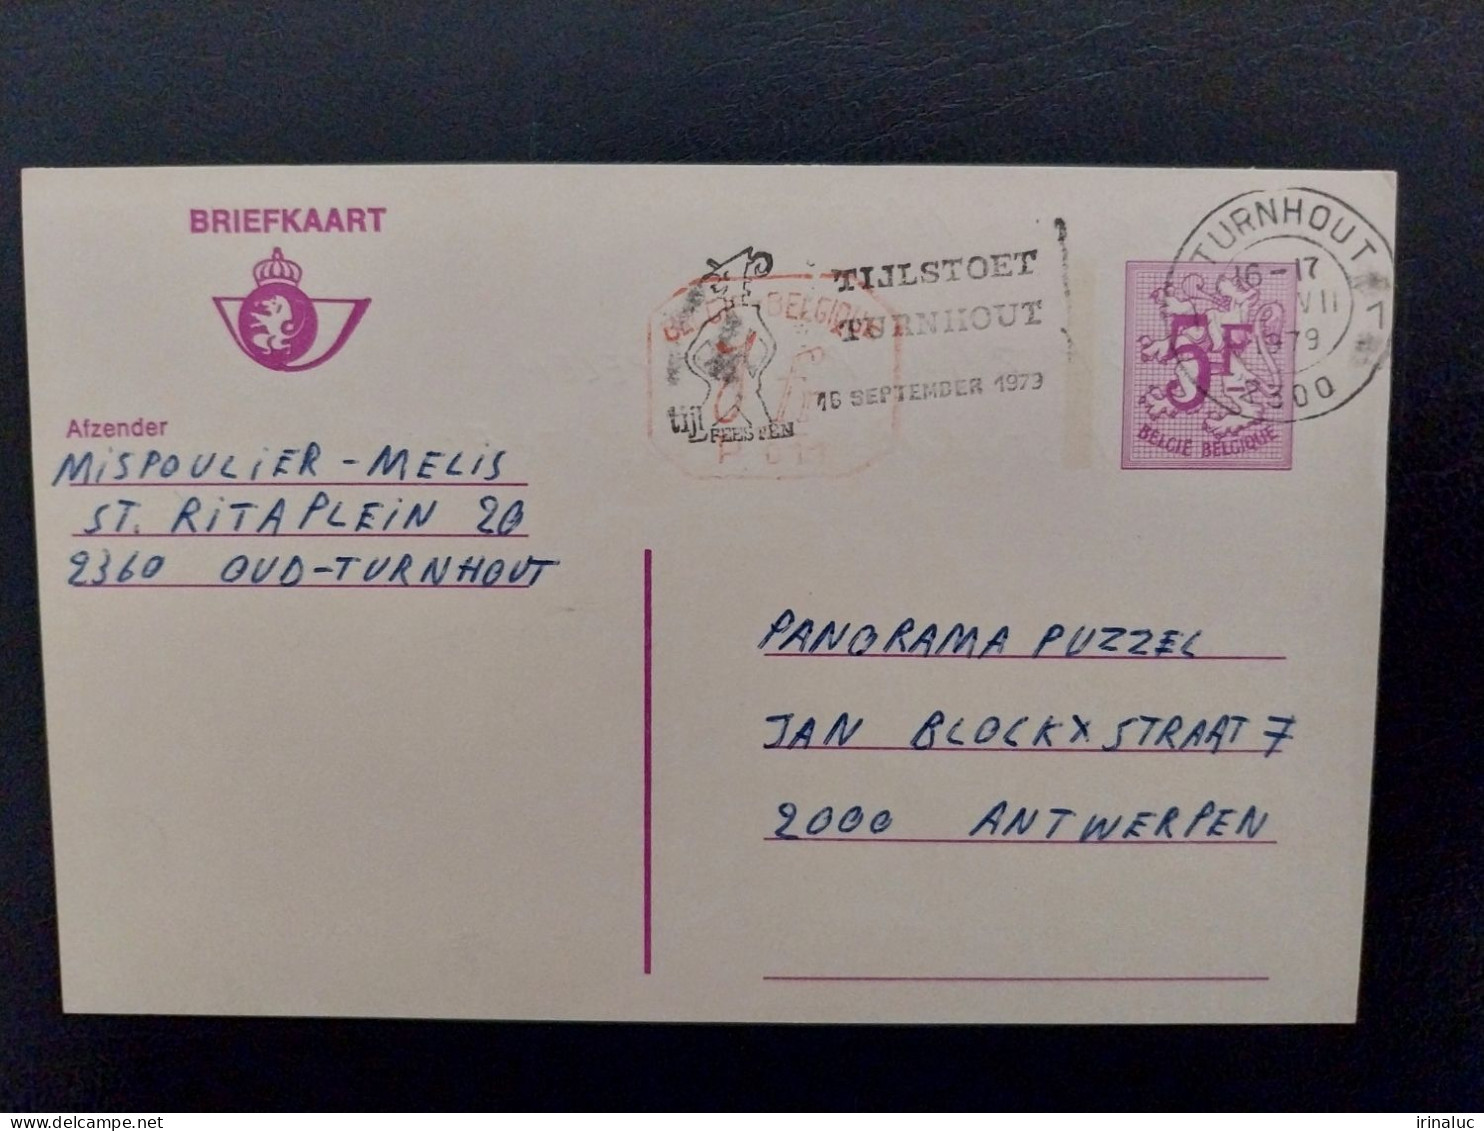 Briefkaart 185-IV M1 P011 - Postkarten 1951-..